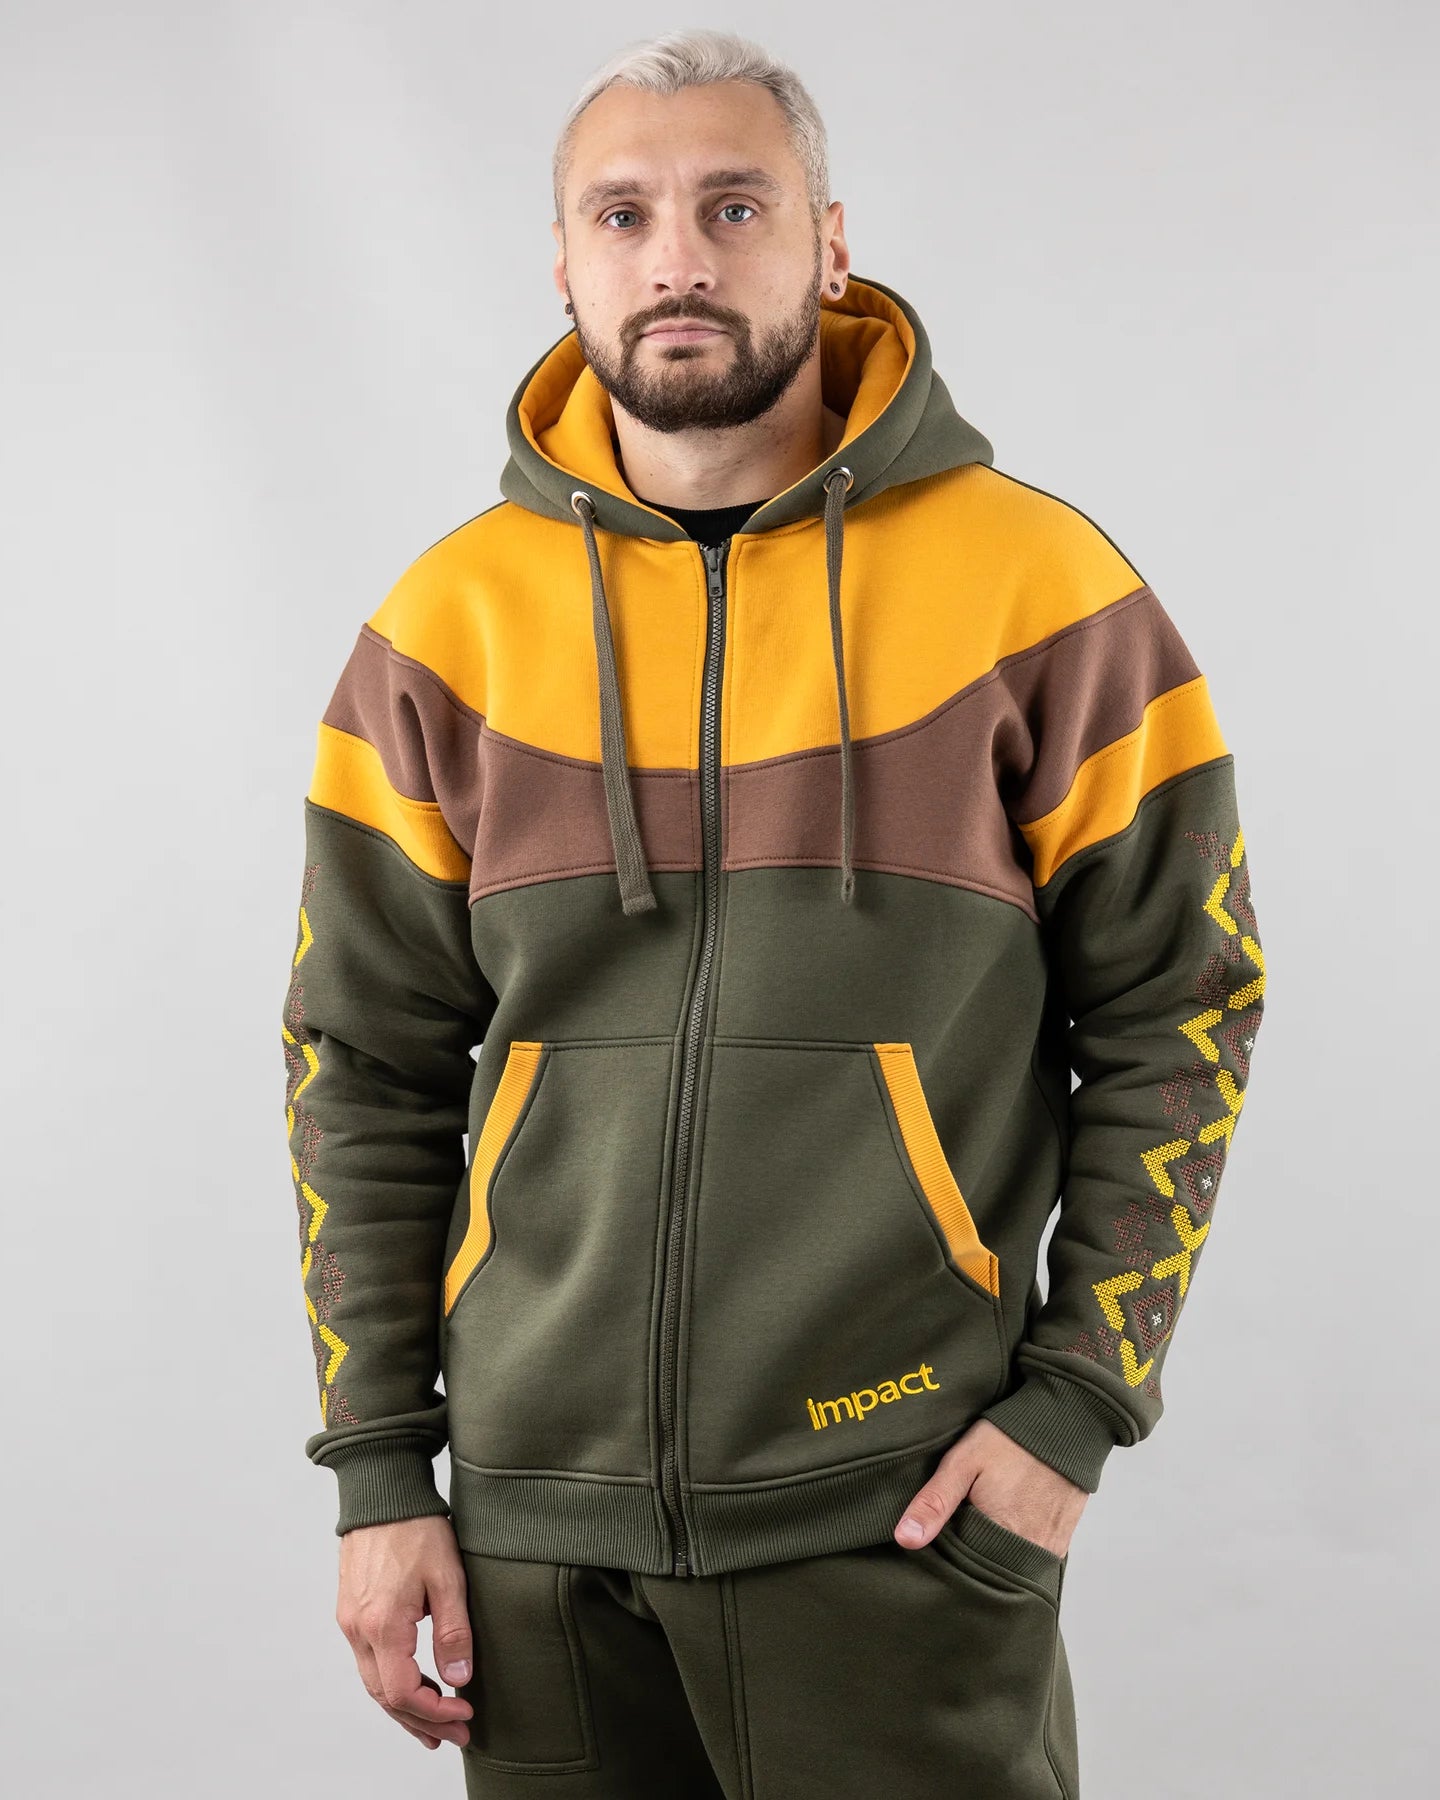 Zip-up hoodie “Sunrise”, Ukrainian vyshyvanka style. Main photo. Khaki/Yellow